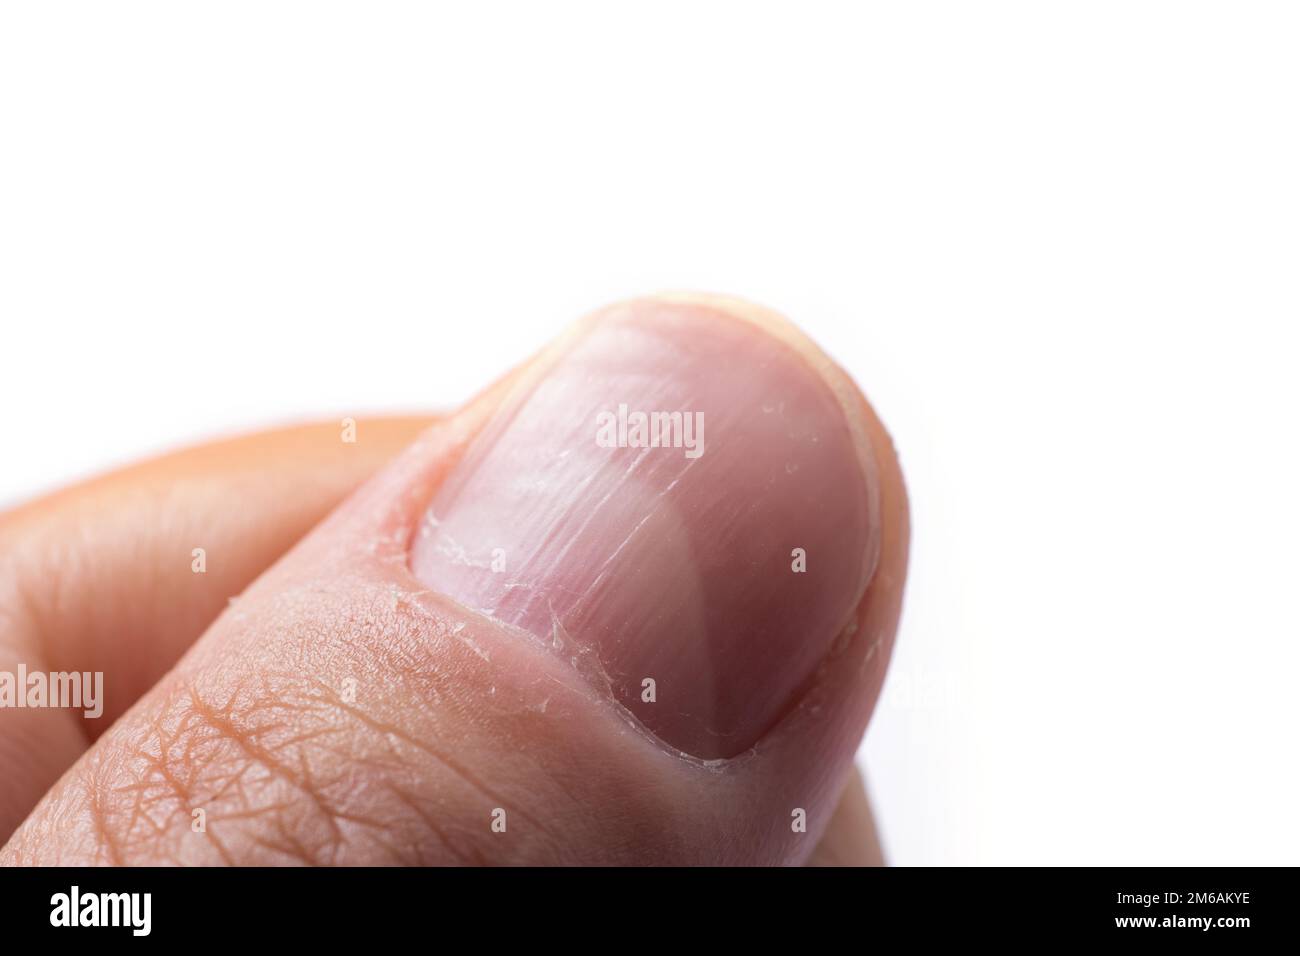 Ridges in Fingernails: Causes, Symptoms, Treatment, Prevention